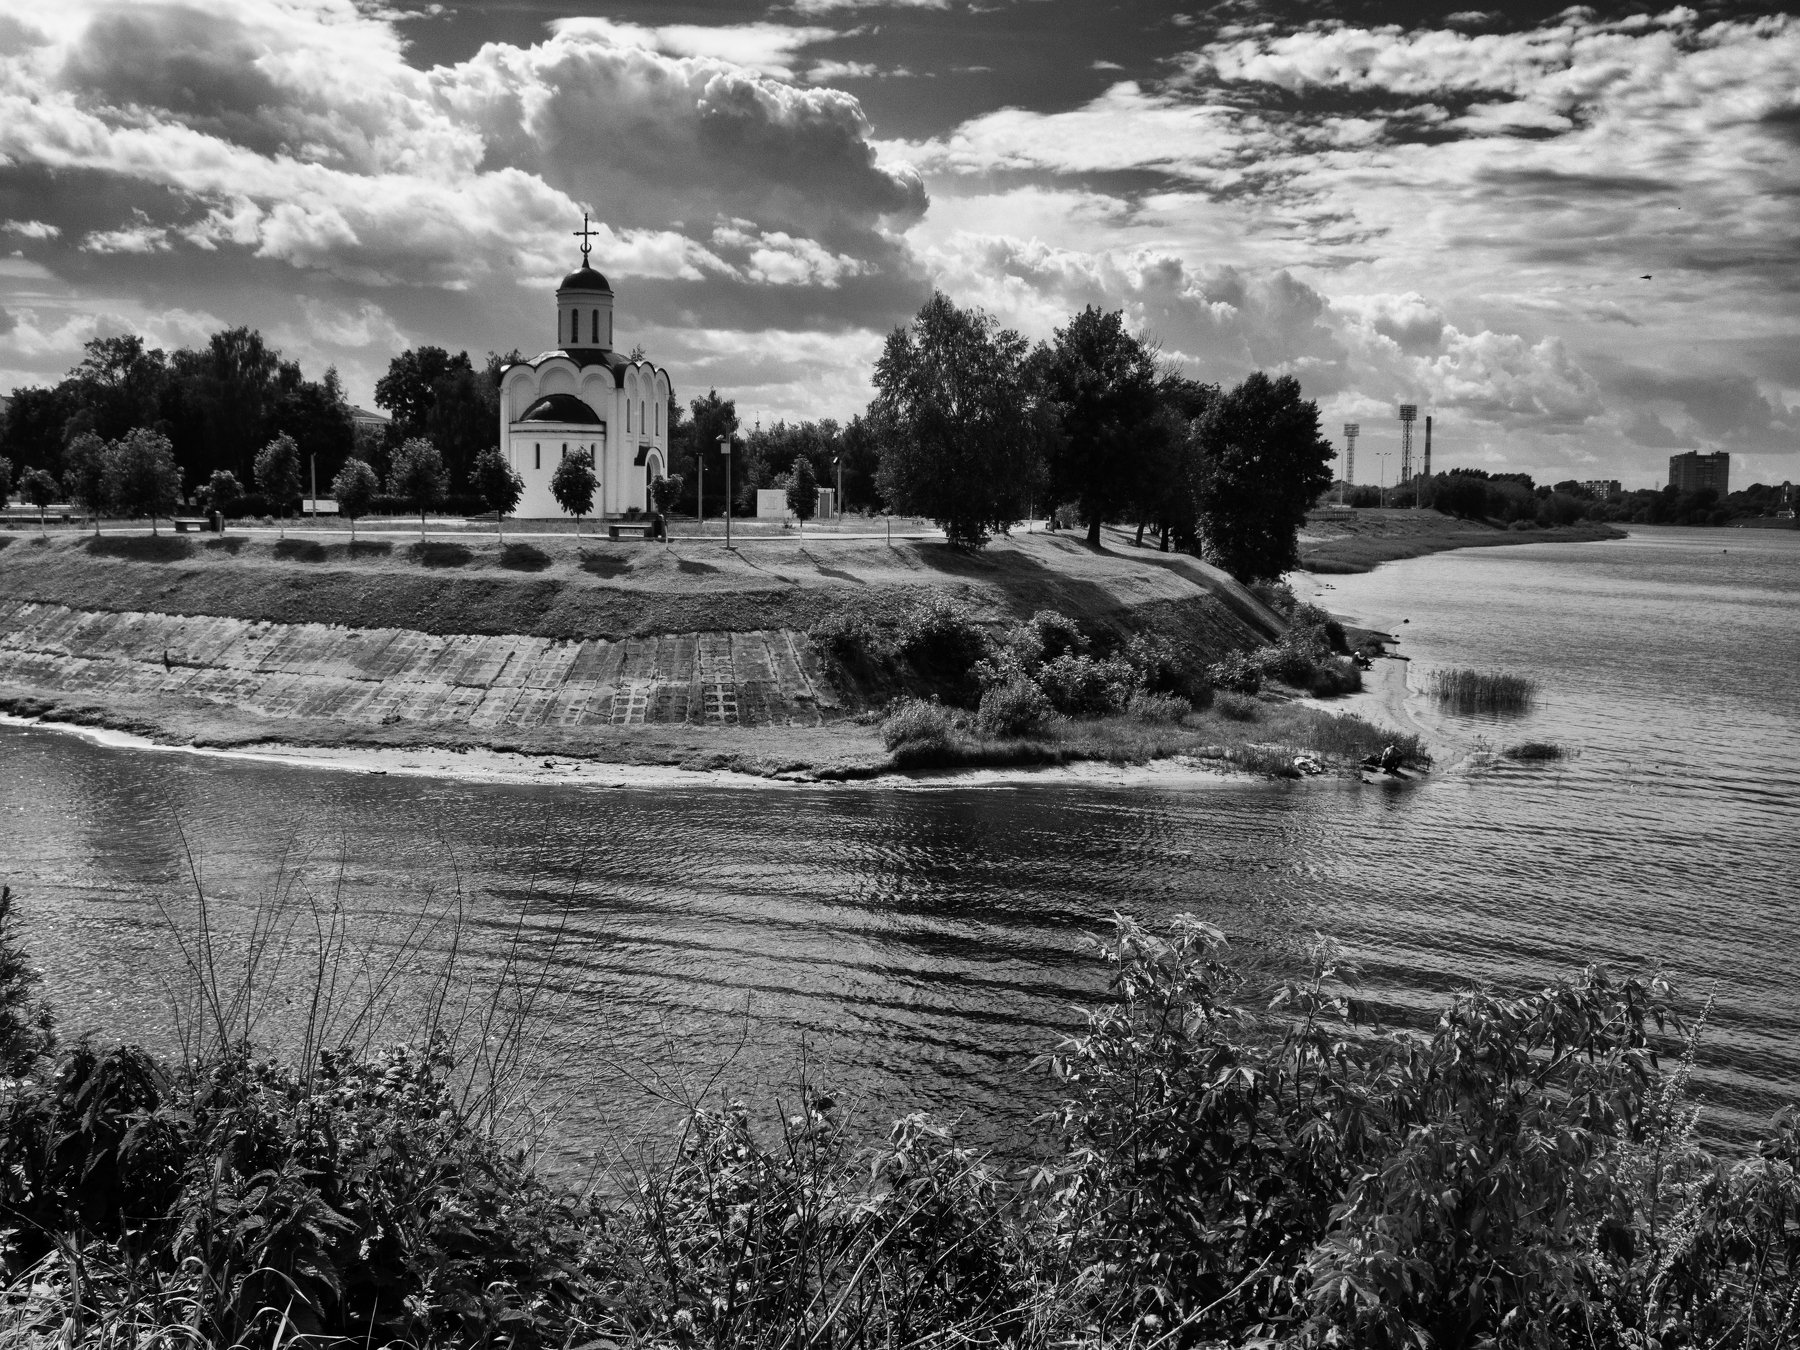 Black and white, Monochrome, Landscape, River, Church, Intensity, Tver, Russia, City, Elena Beregatnova